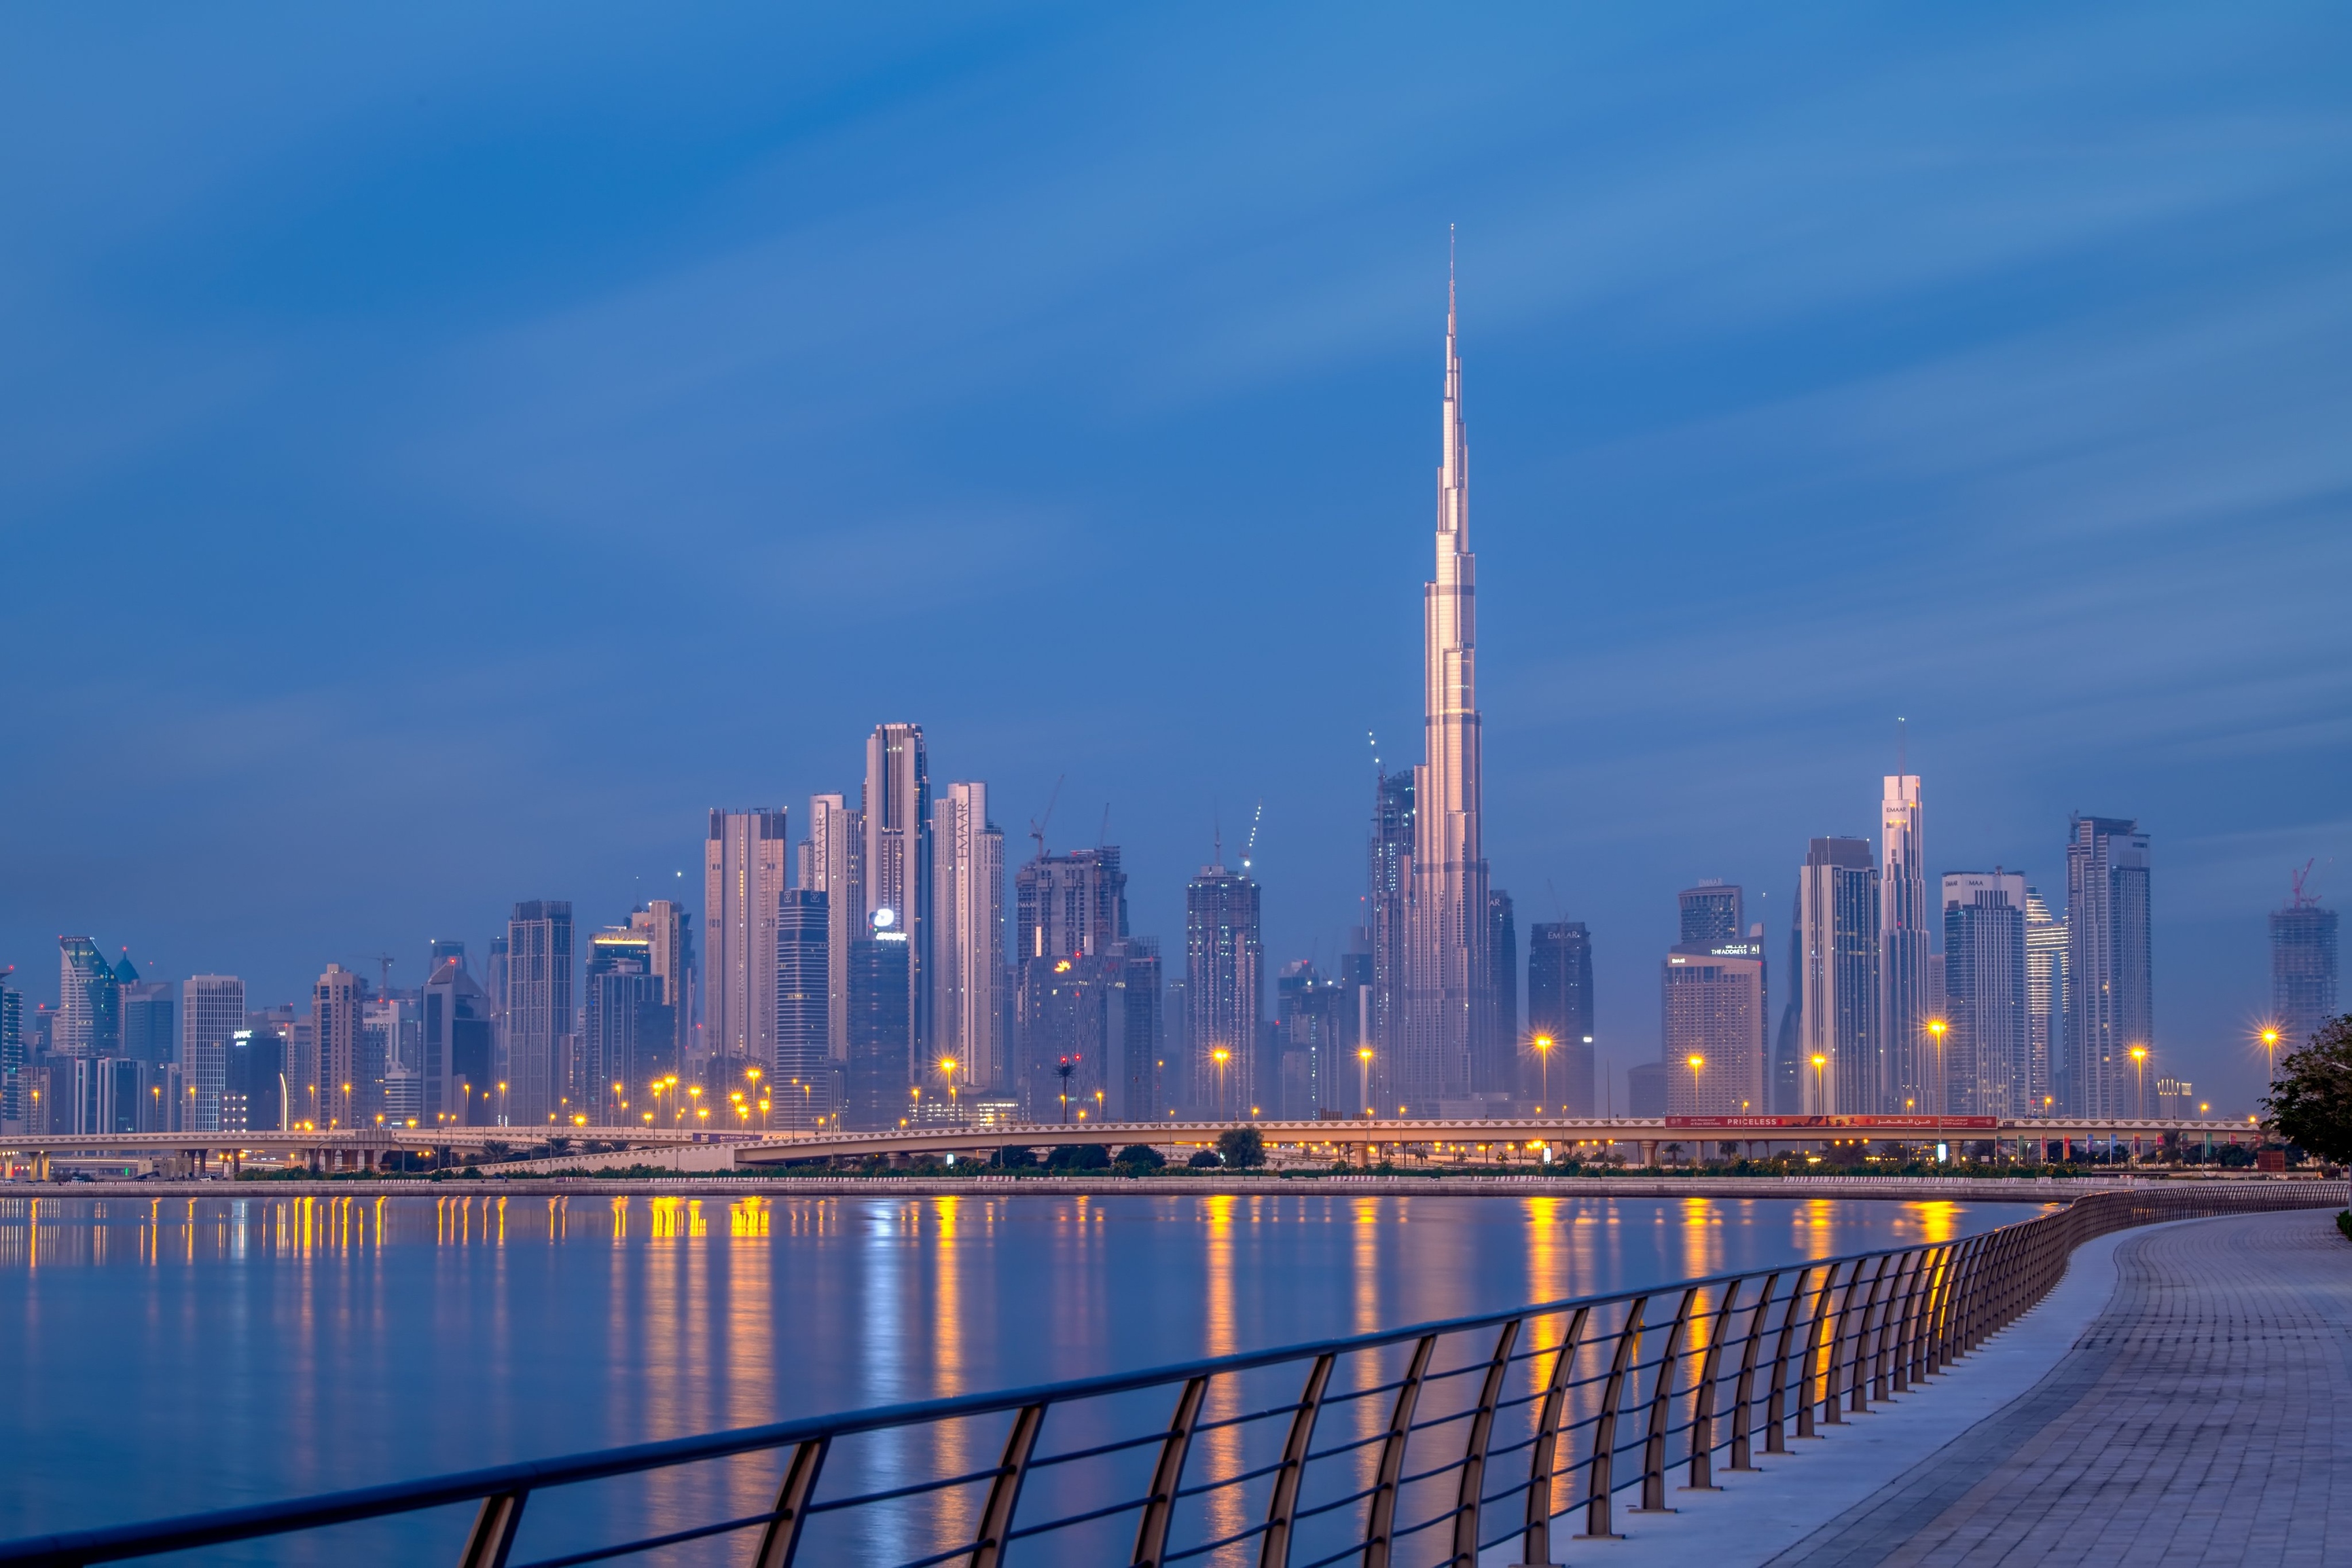 التصرفات العقارية في دبي تتجاوز 11,700 معاملة خلال مايو وتلامس 34 مليار درهم